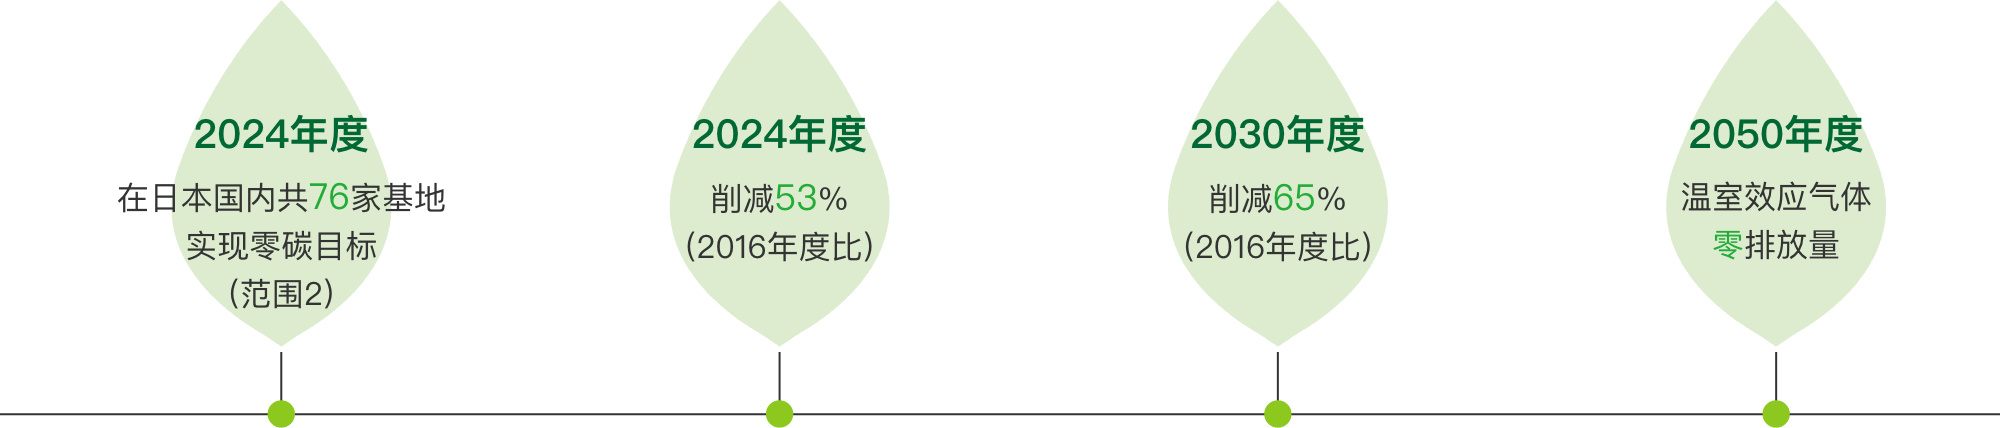 ・2024年度 在日本国内共76家基地 实现零碳目标 (范围2) ・2024年度 削减53% (2016年度比) ・2030年度 削减65% (2016年度比)・ 2050年度 温室效应气体 零排放量 